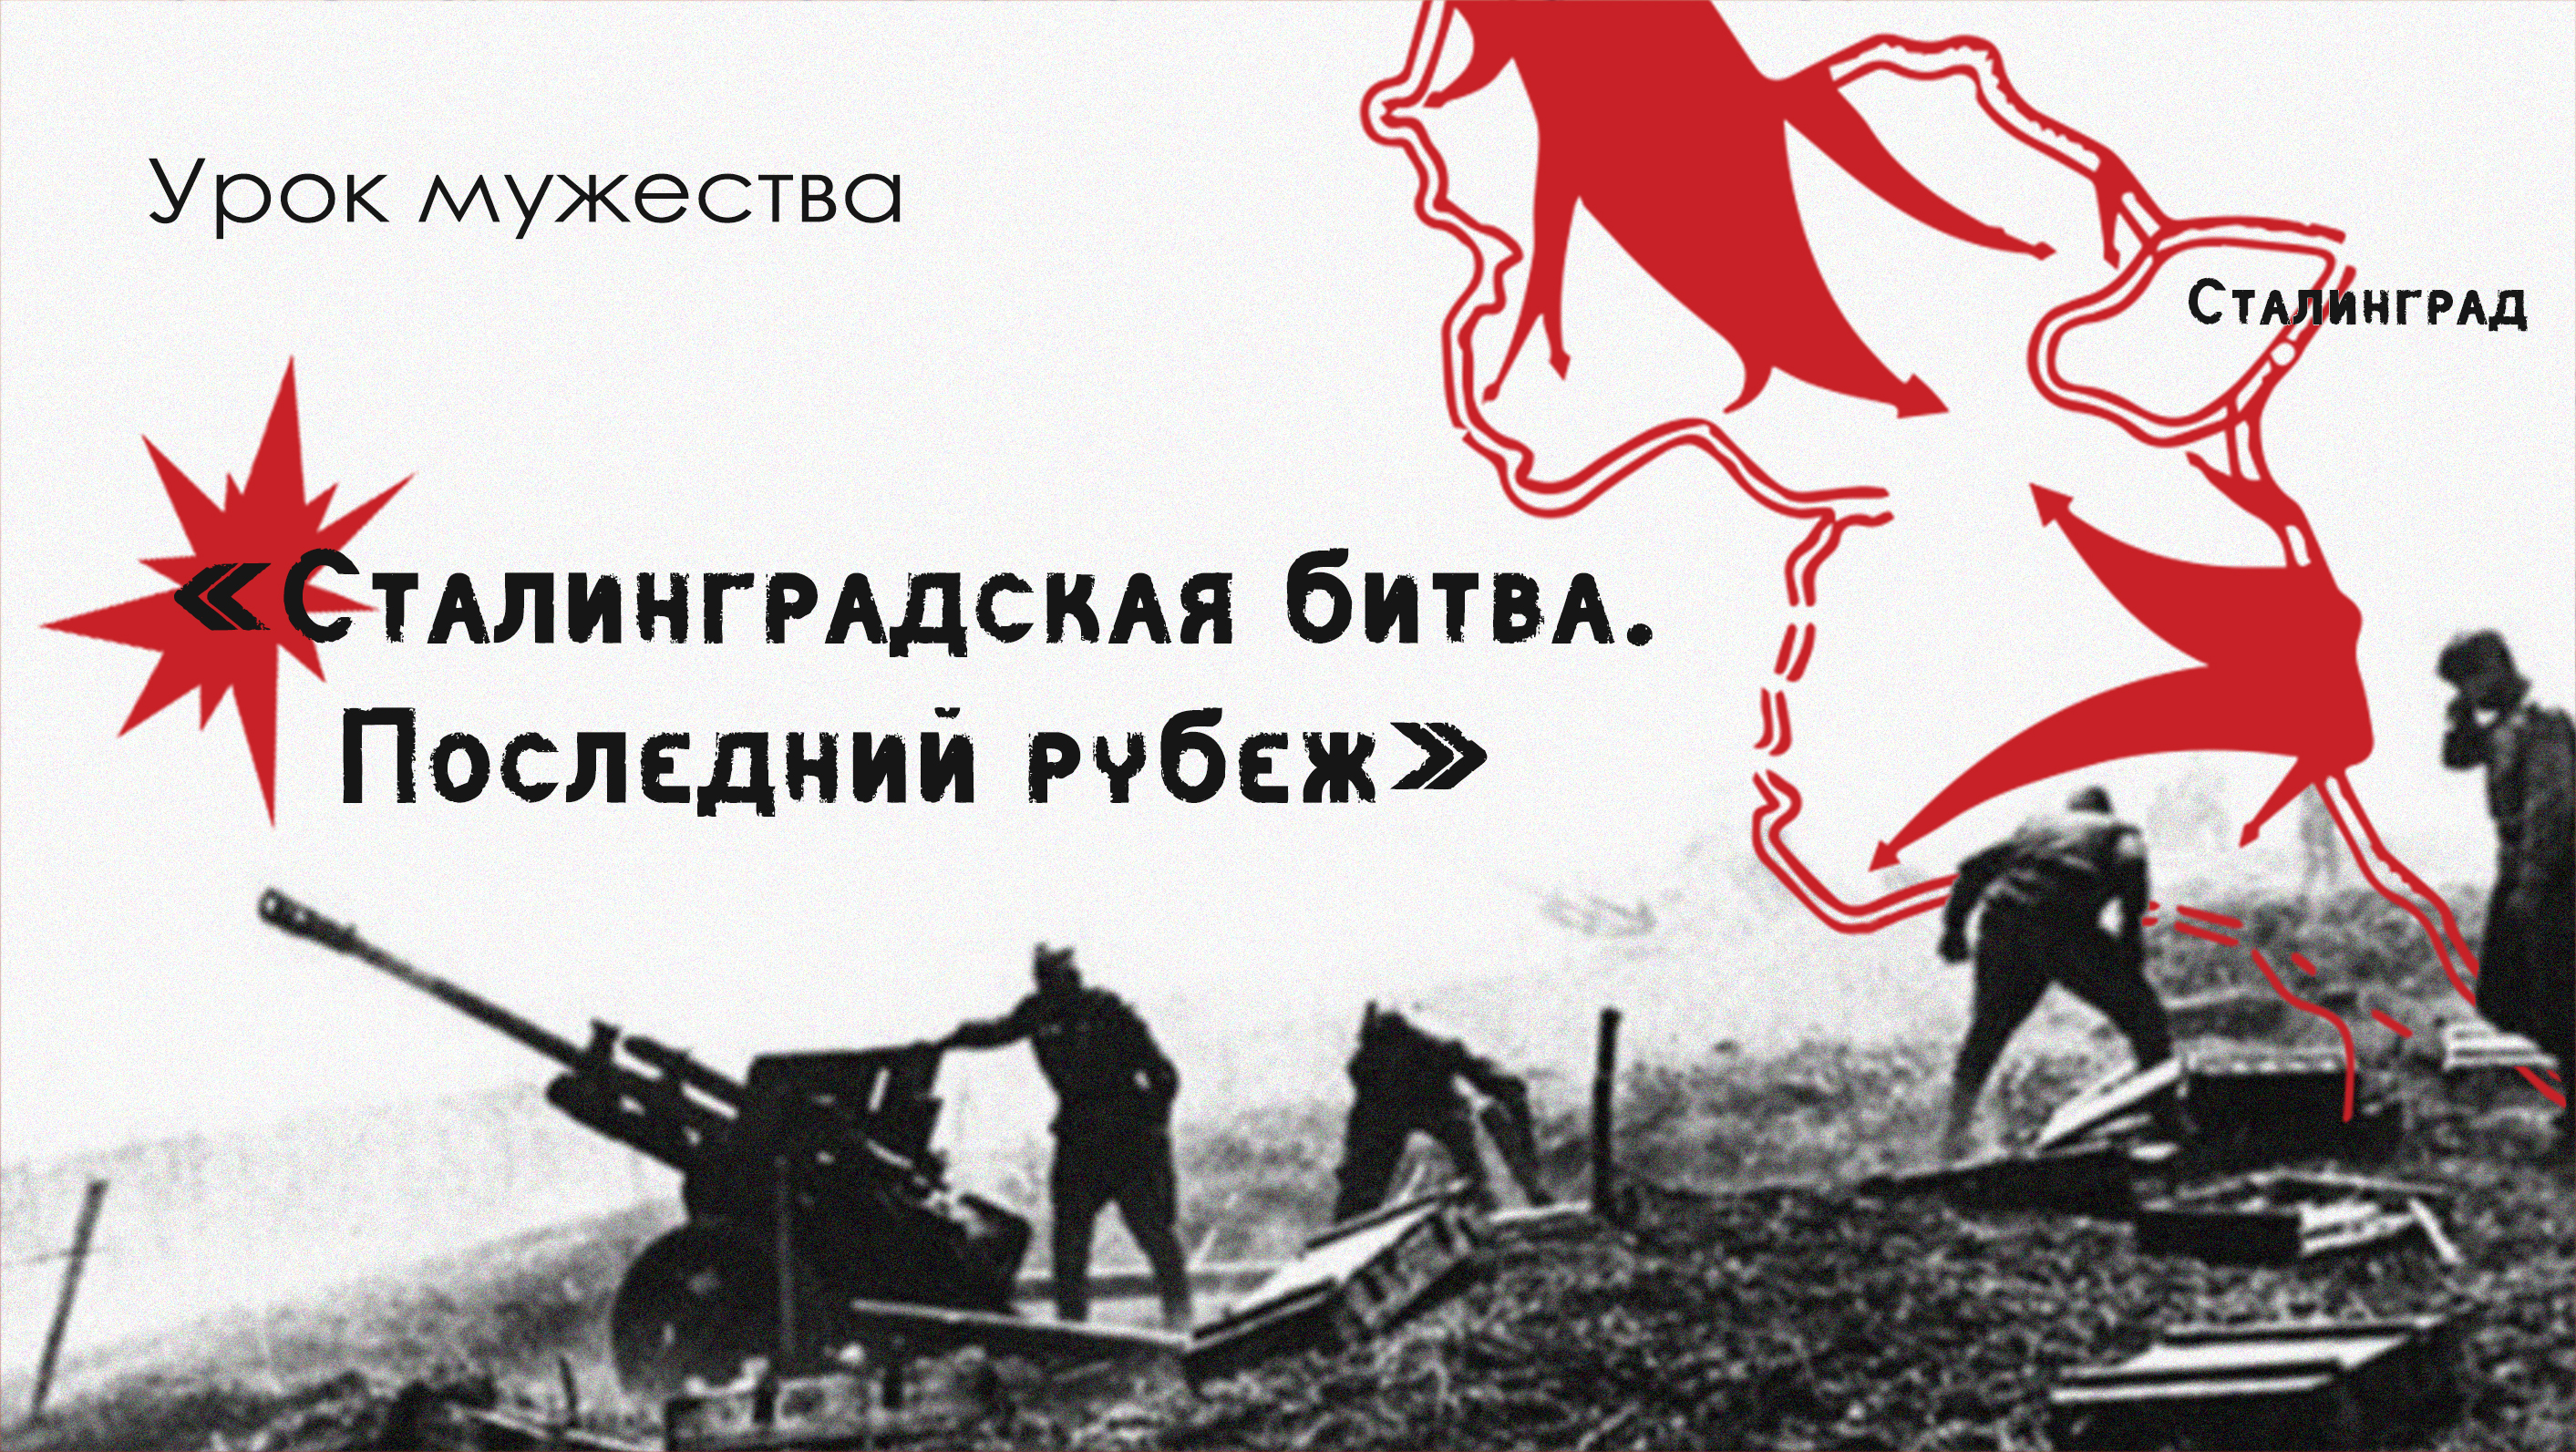 Уроки мужества «Сталинградская битва: последний рубеж».